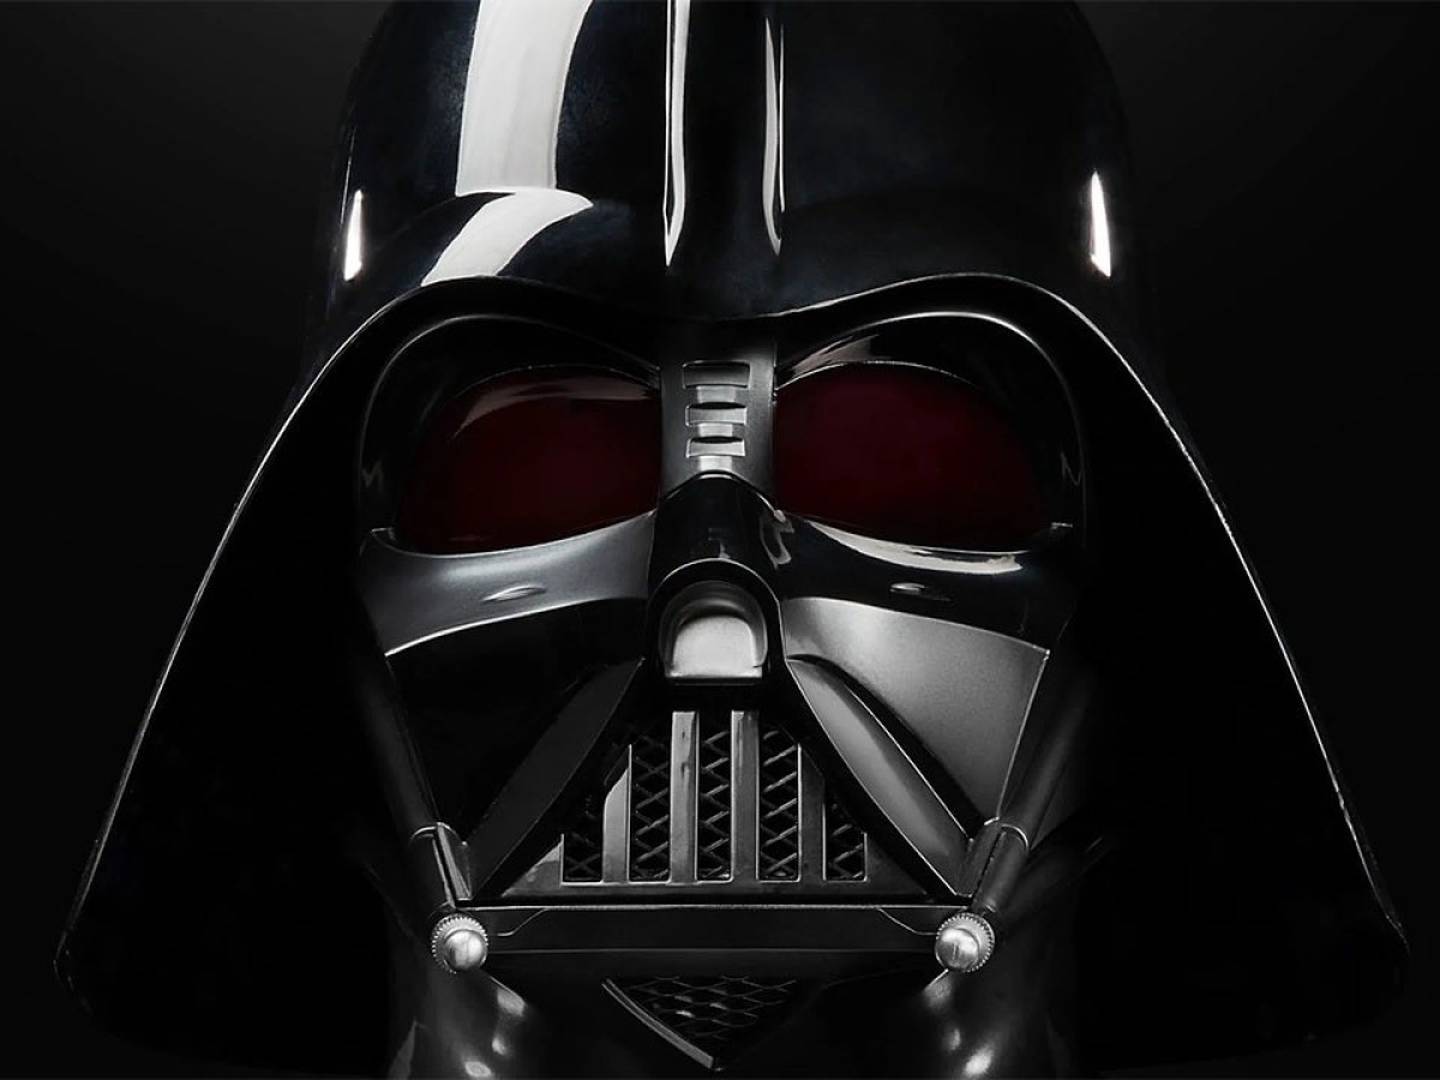 minusválido Importancia Incitar Star Wars: Los 5 modelos Adidas más geniales sobre Darth Vader – FayerWayer